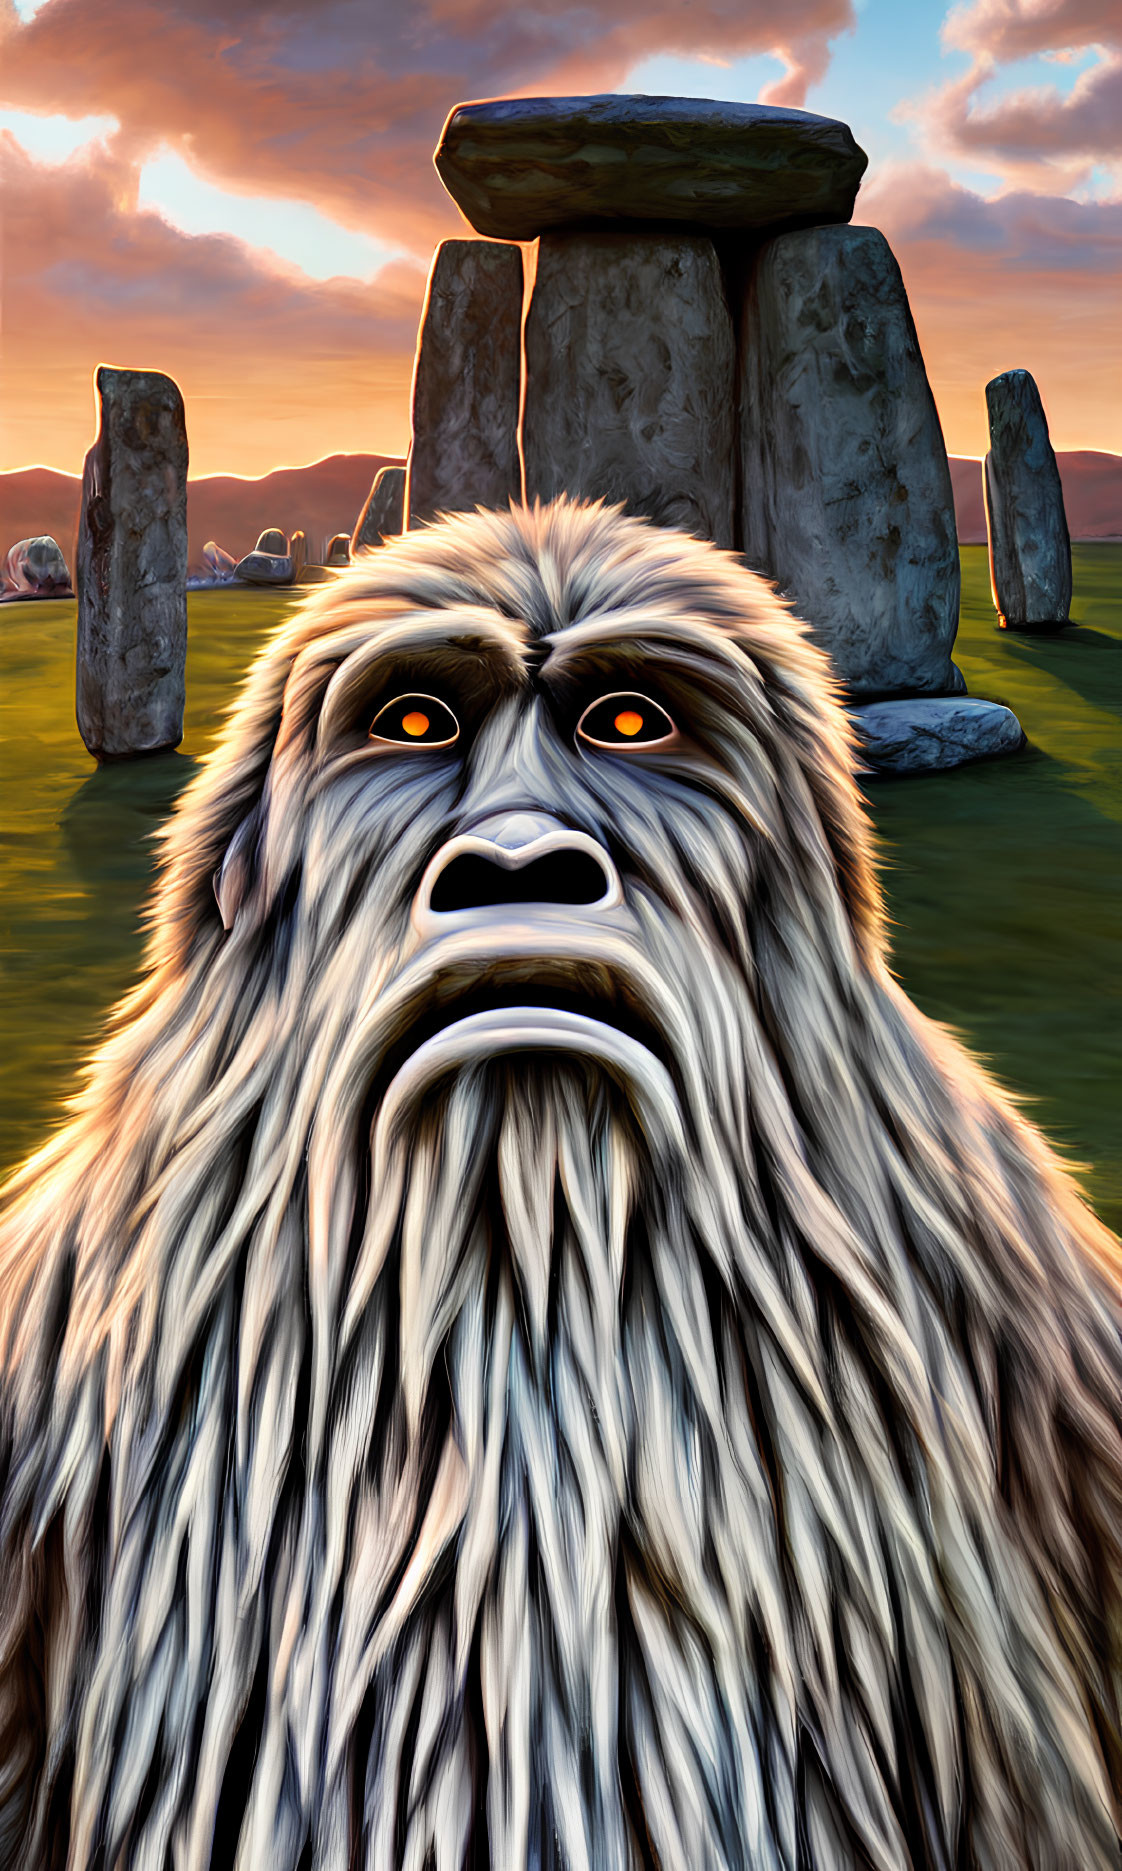 Mystical white-haired creature with orange eyes at Stonehenge sunset